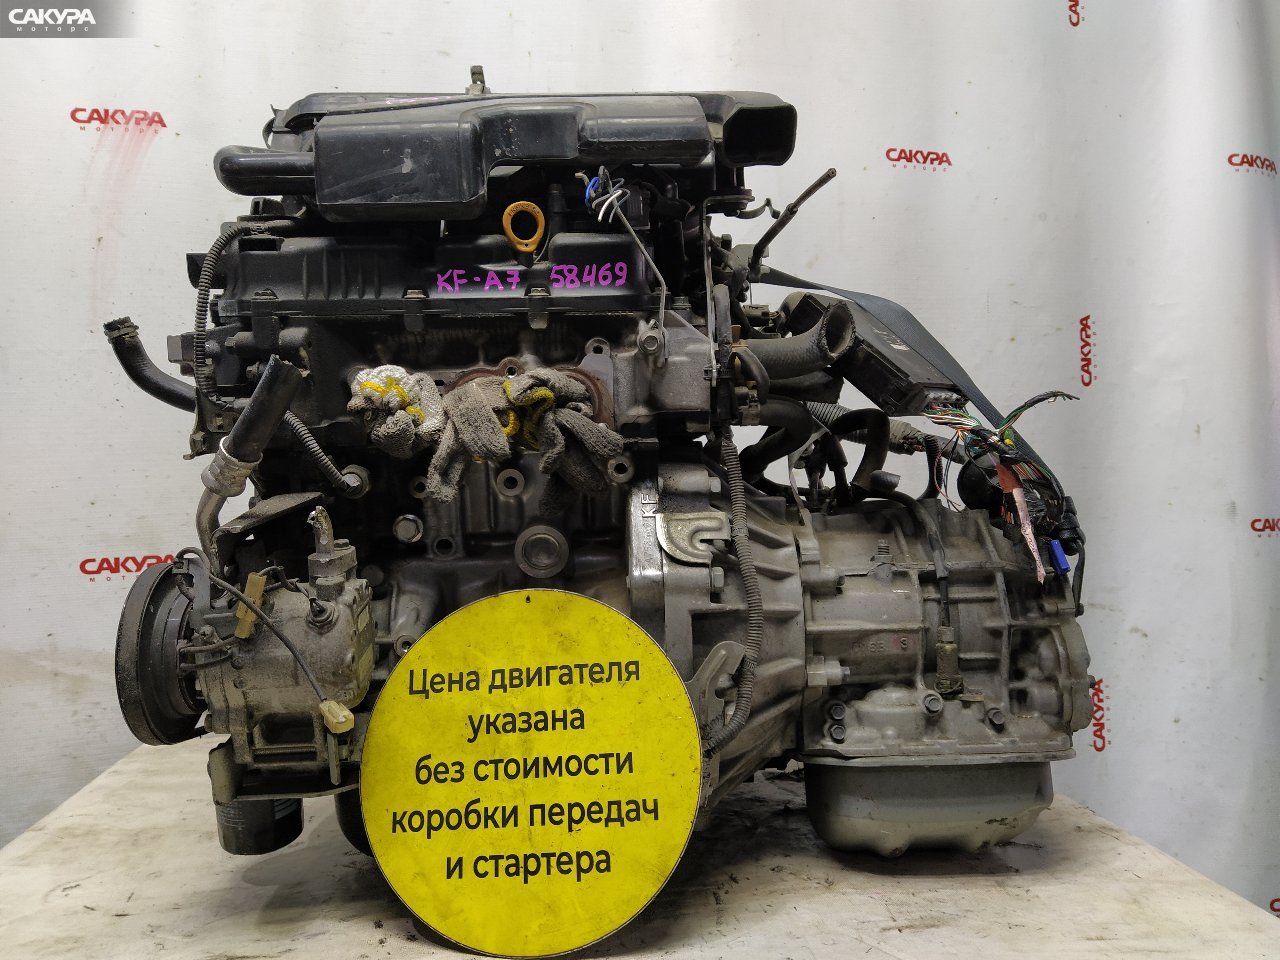 Двигатель Daihatsu Esse L235S KF-VE: купить в Сакура Красноярск.